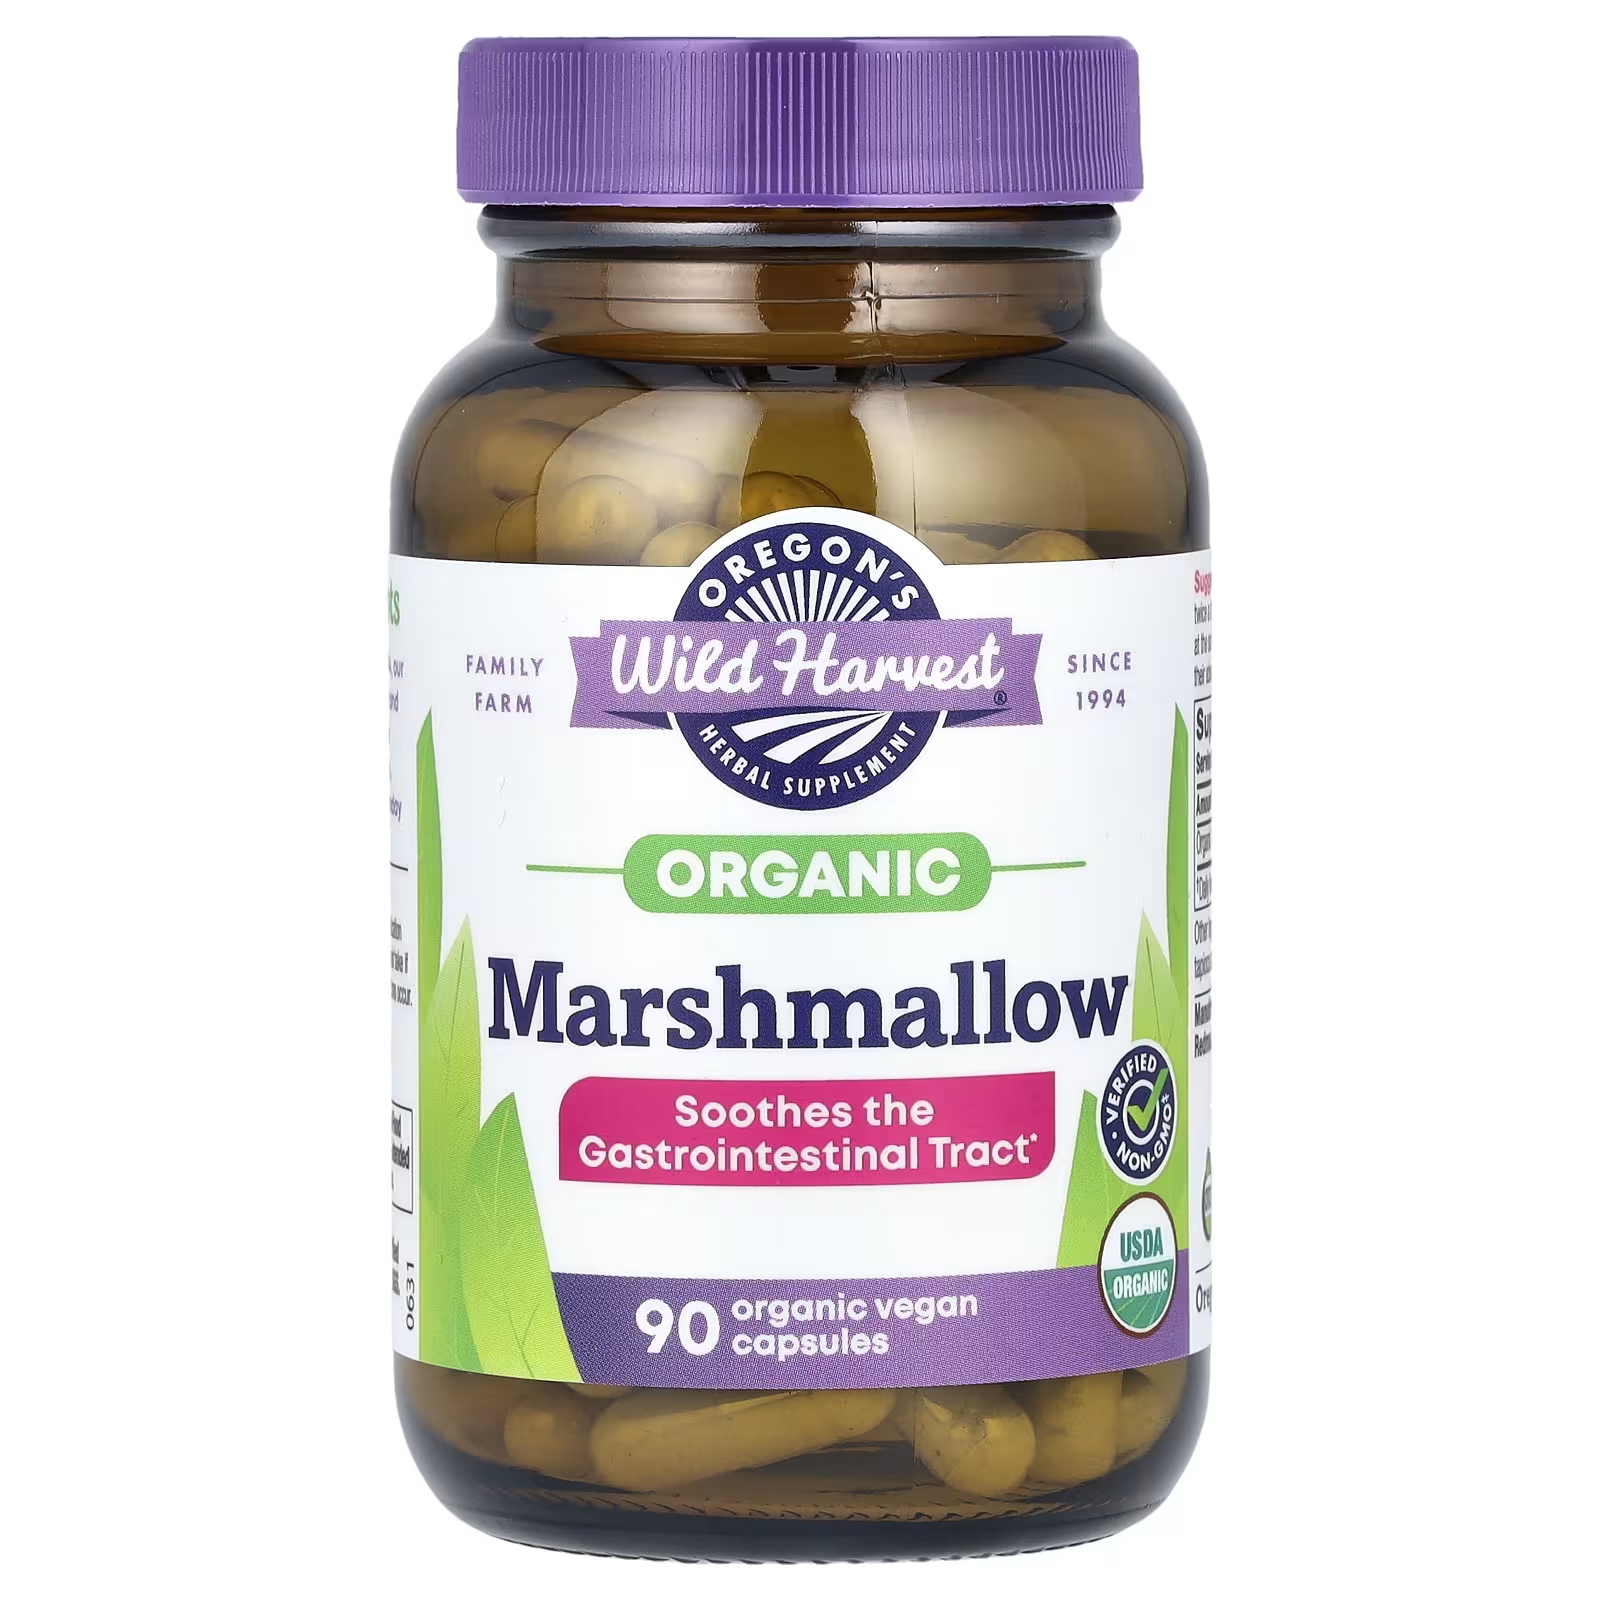 Травяная добавка Oregons Wild Harvest Organic Marshmallow, 90 органических веганских капсул донченко елена желудочно кишечный тракт эффективные методы лечения